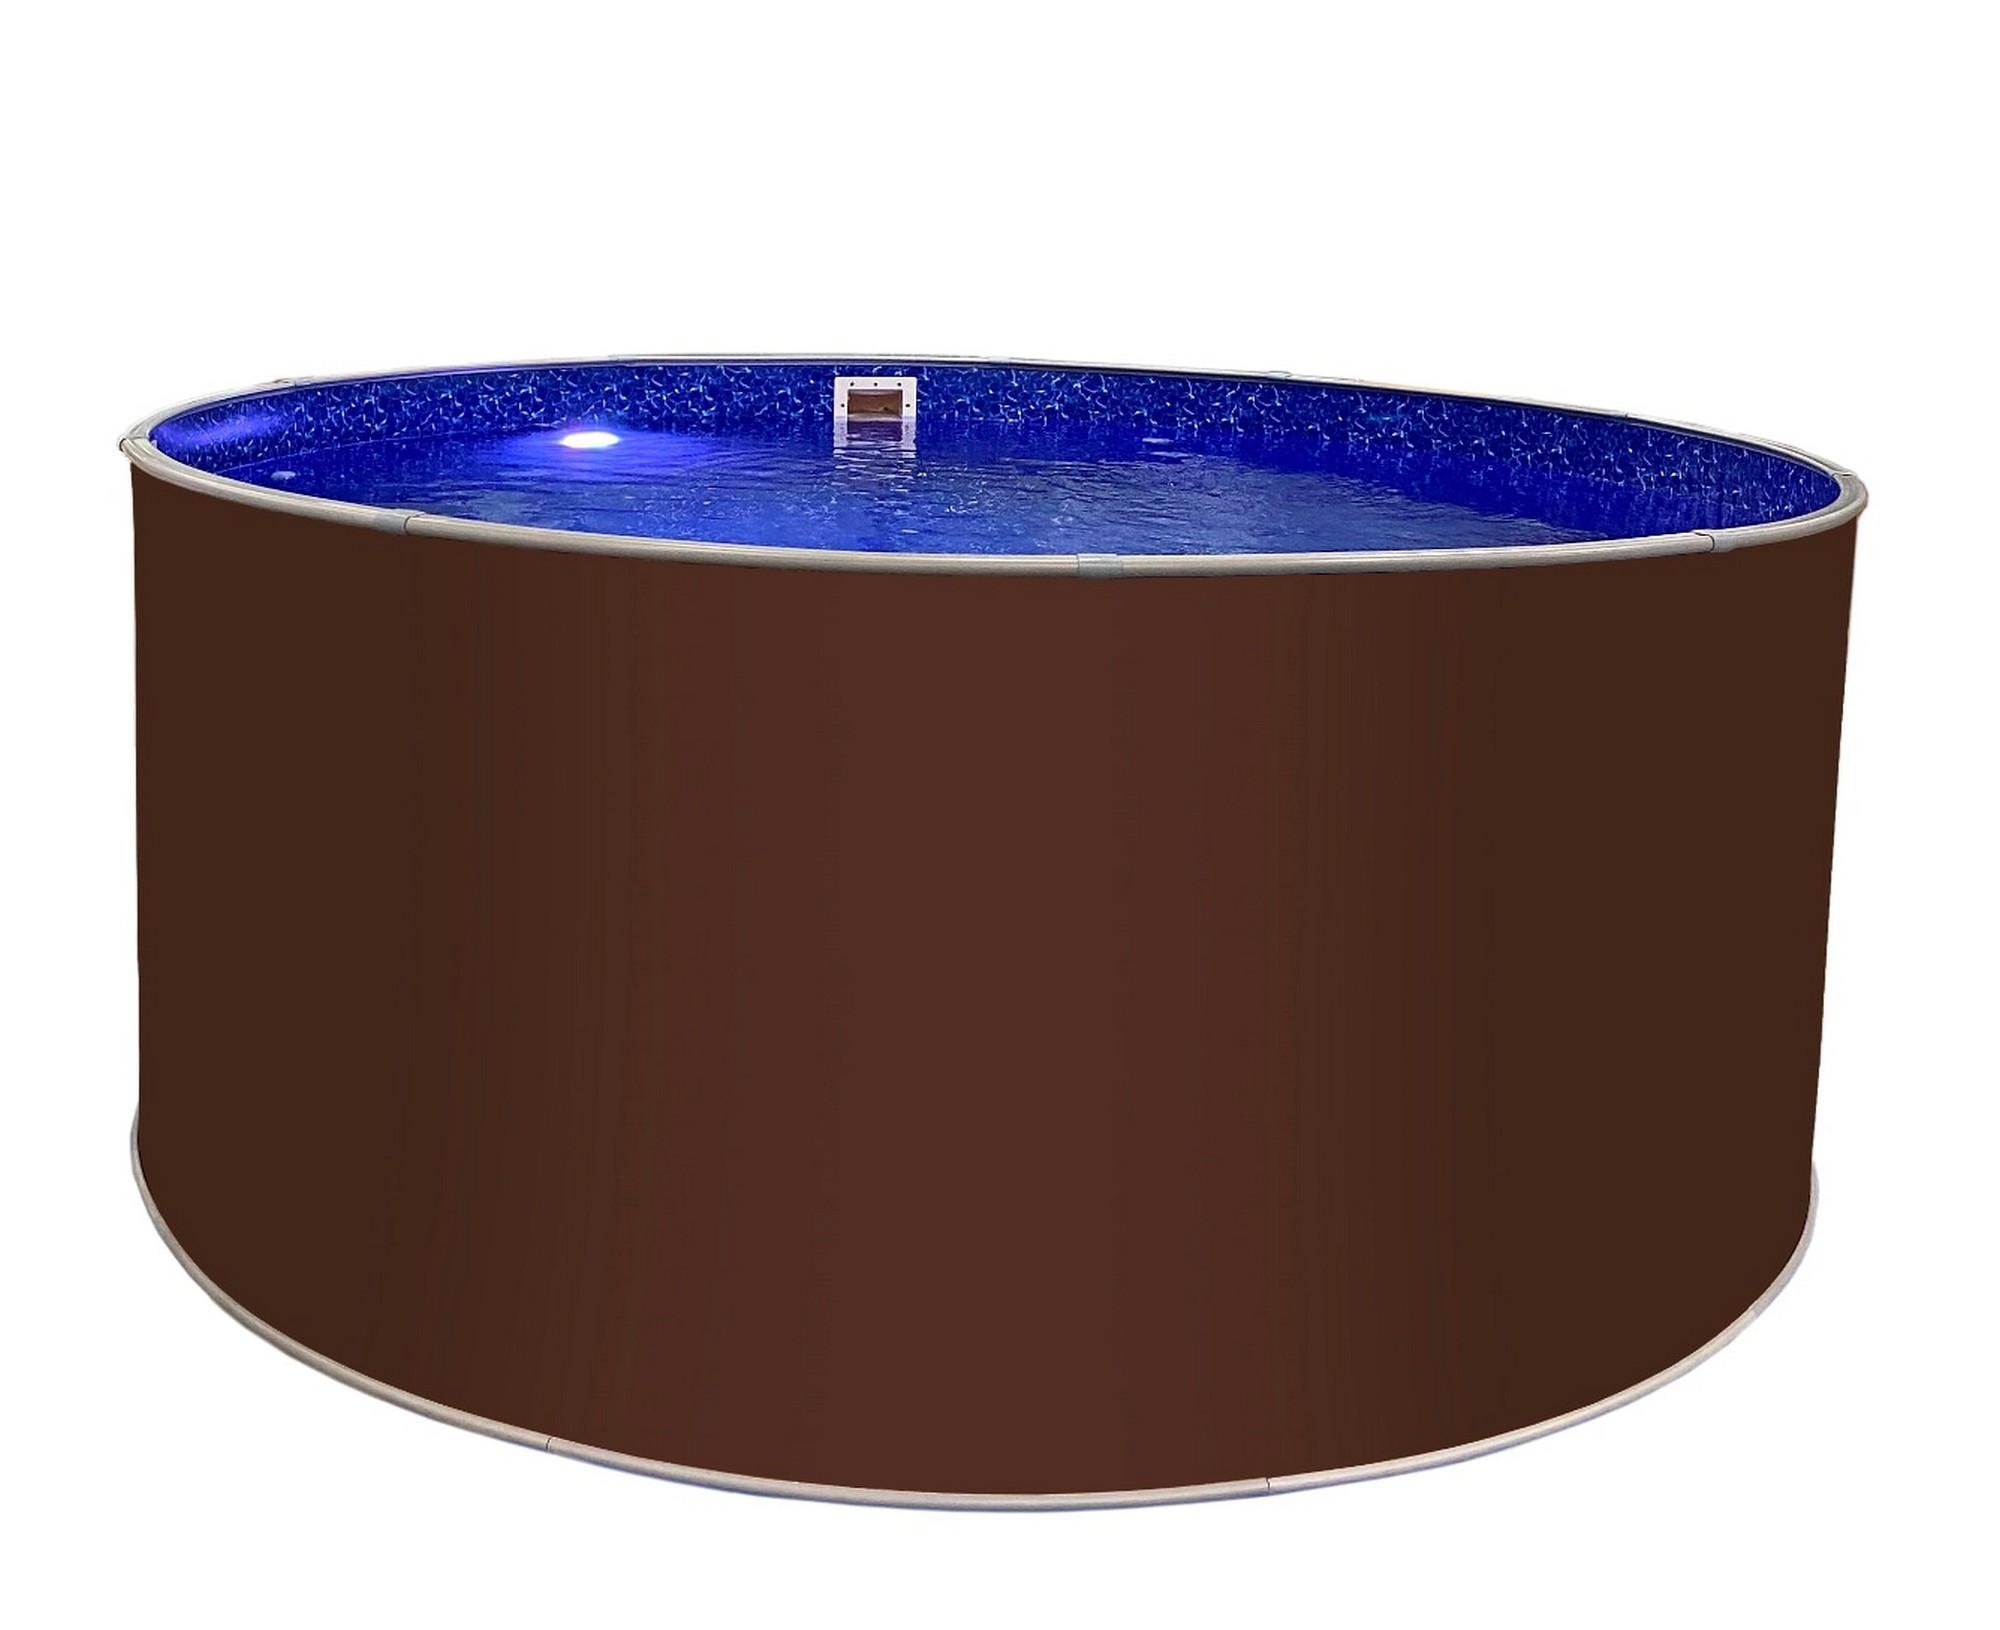 Круглый бассейн Лагуна 250х125см ТМ816/25011 темный шоколад (RAL 8017)